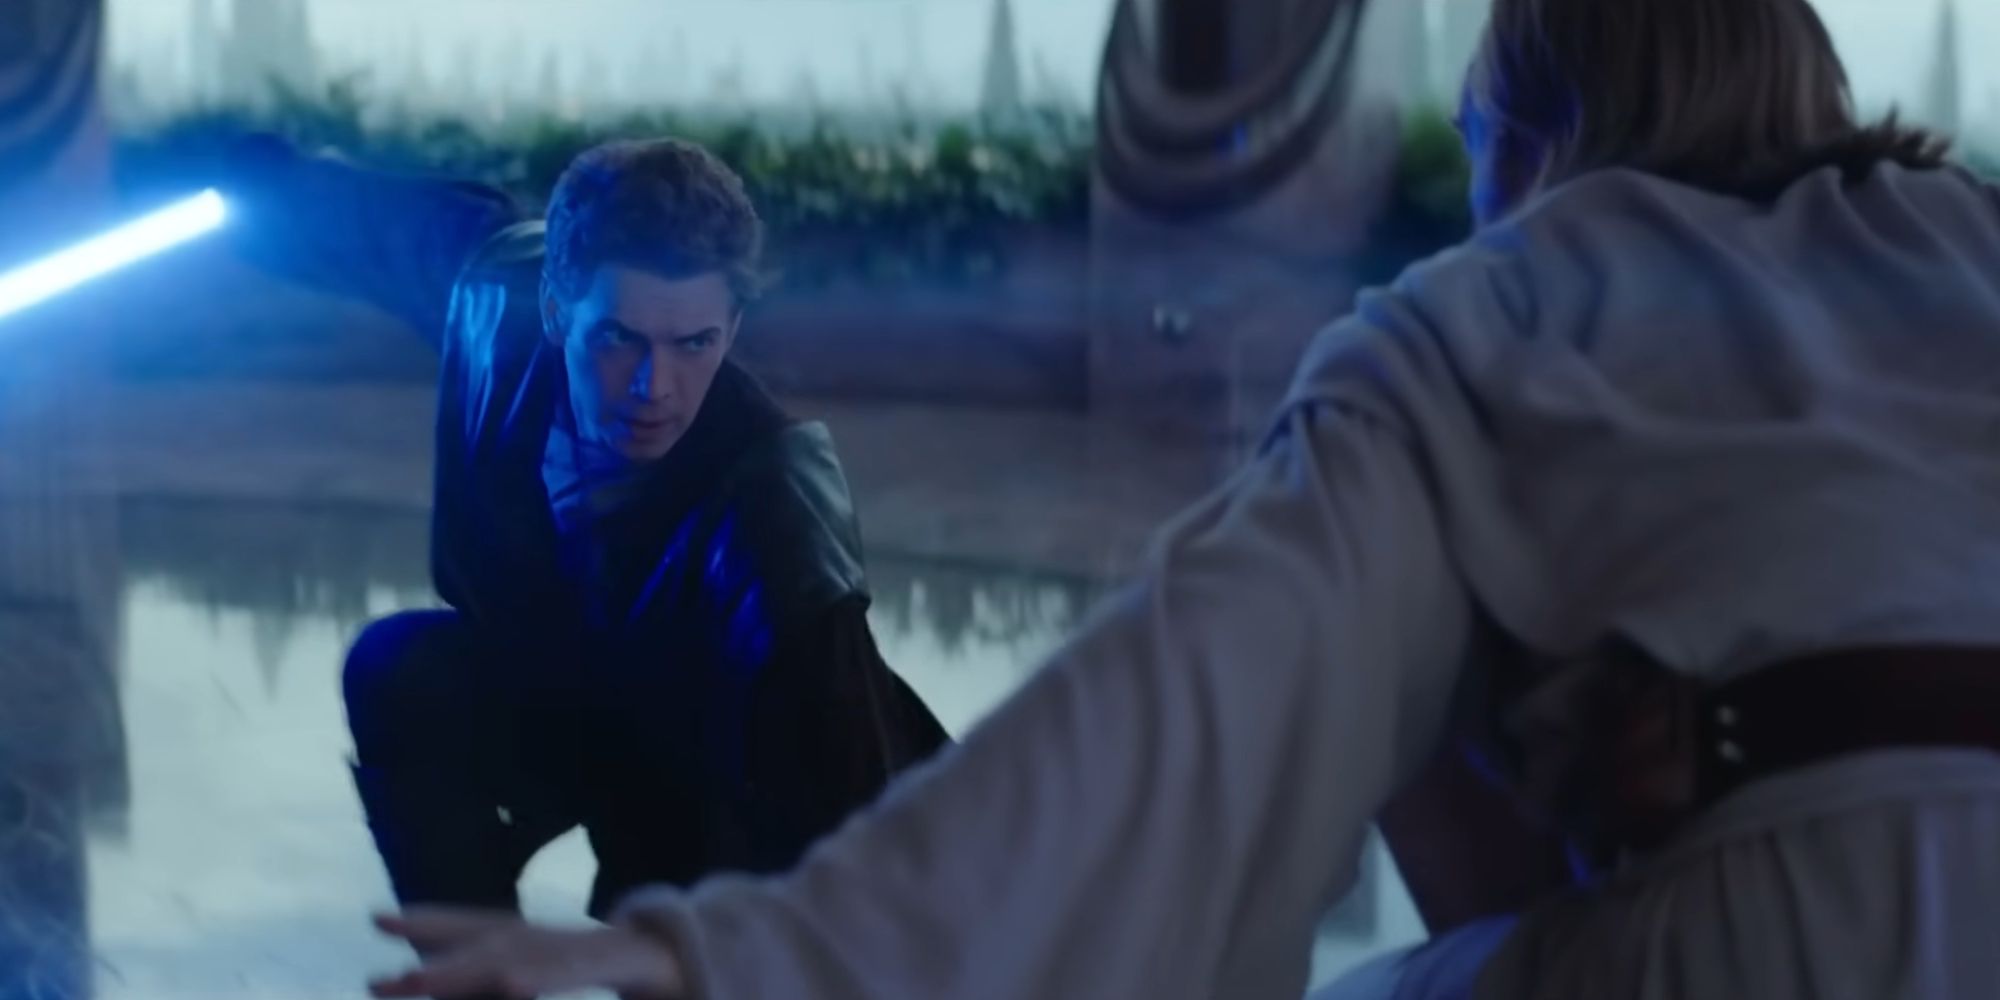 Anakin and Obi Wan sparring in Part V of the Obi Wan Kenobi series